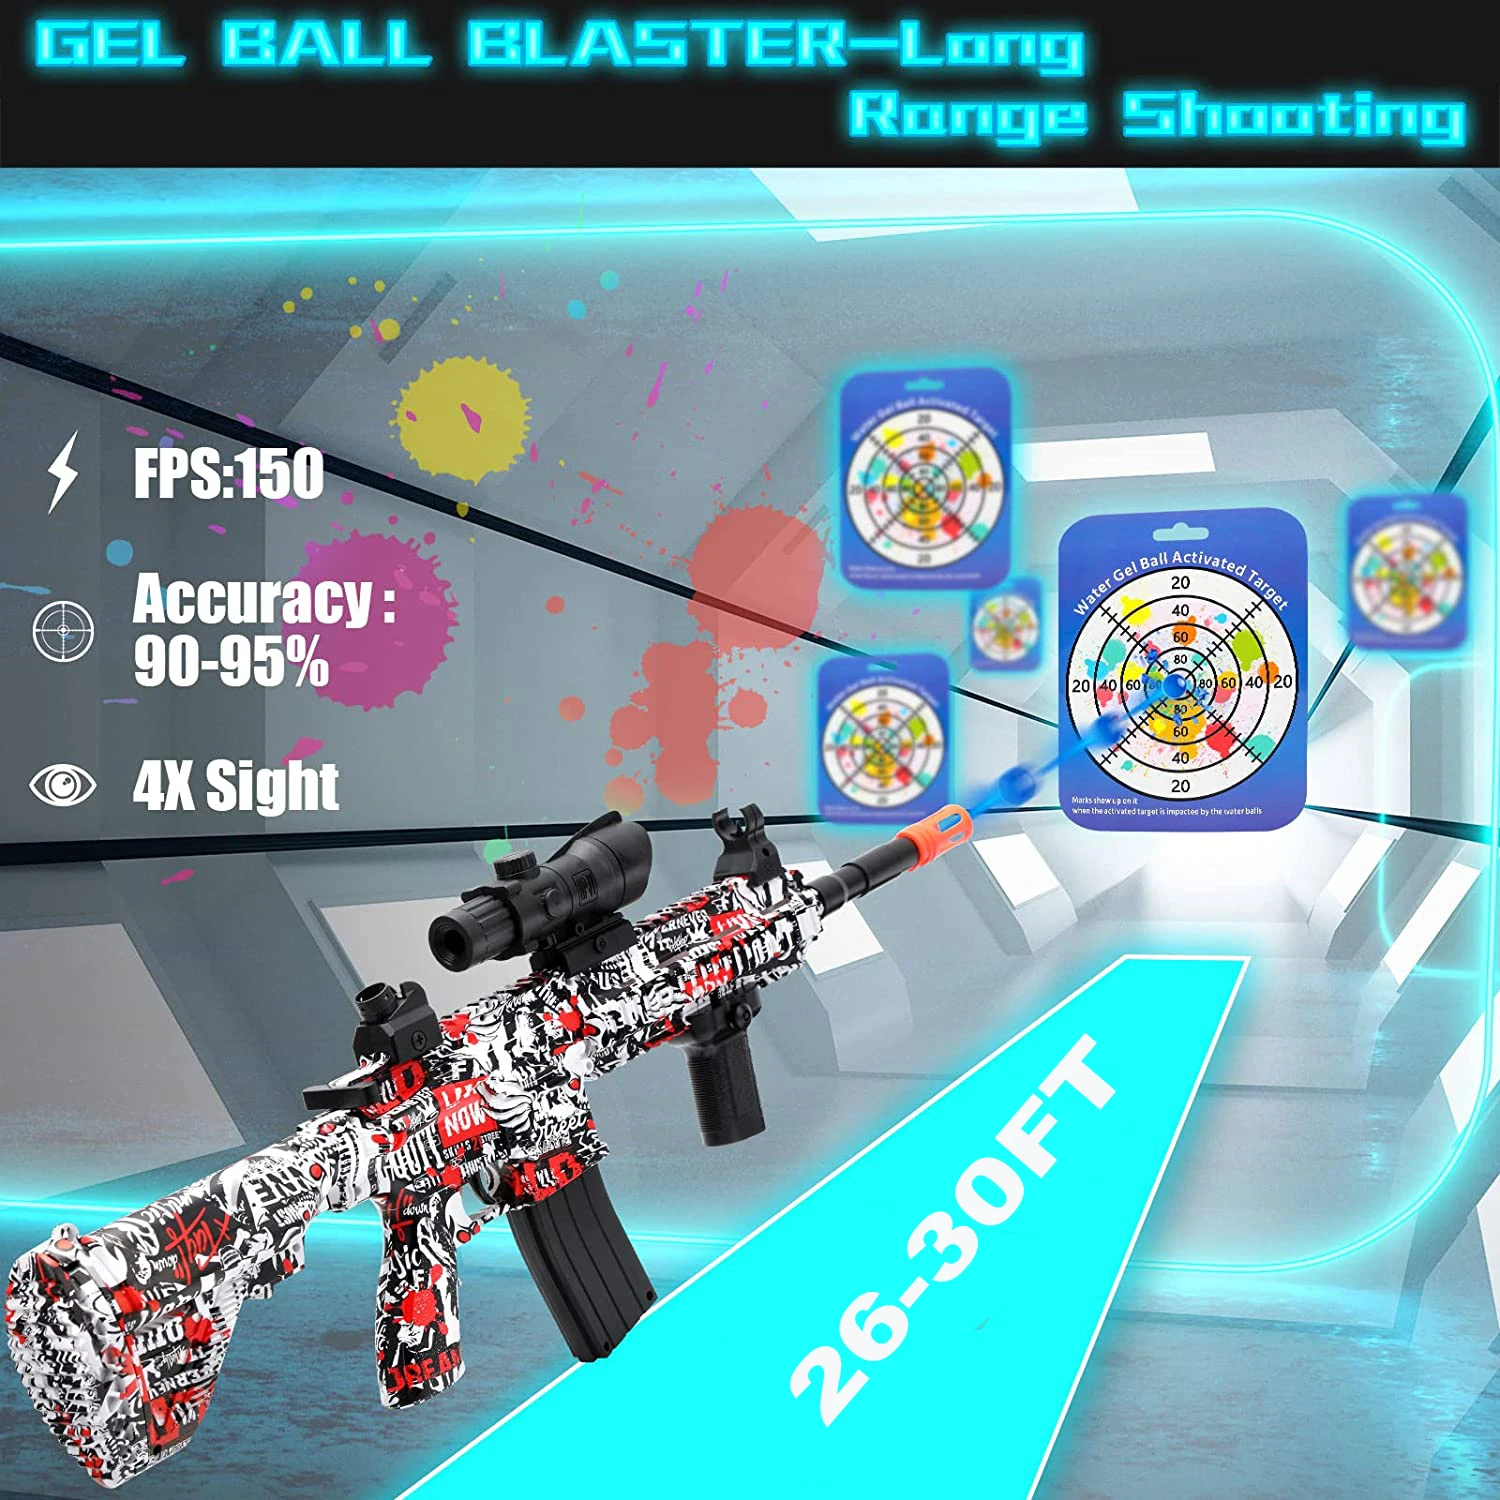 Arma Brinquedo Pistola Para Celular Mobile Bluetooth Jogo Game